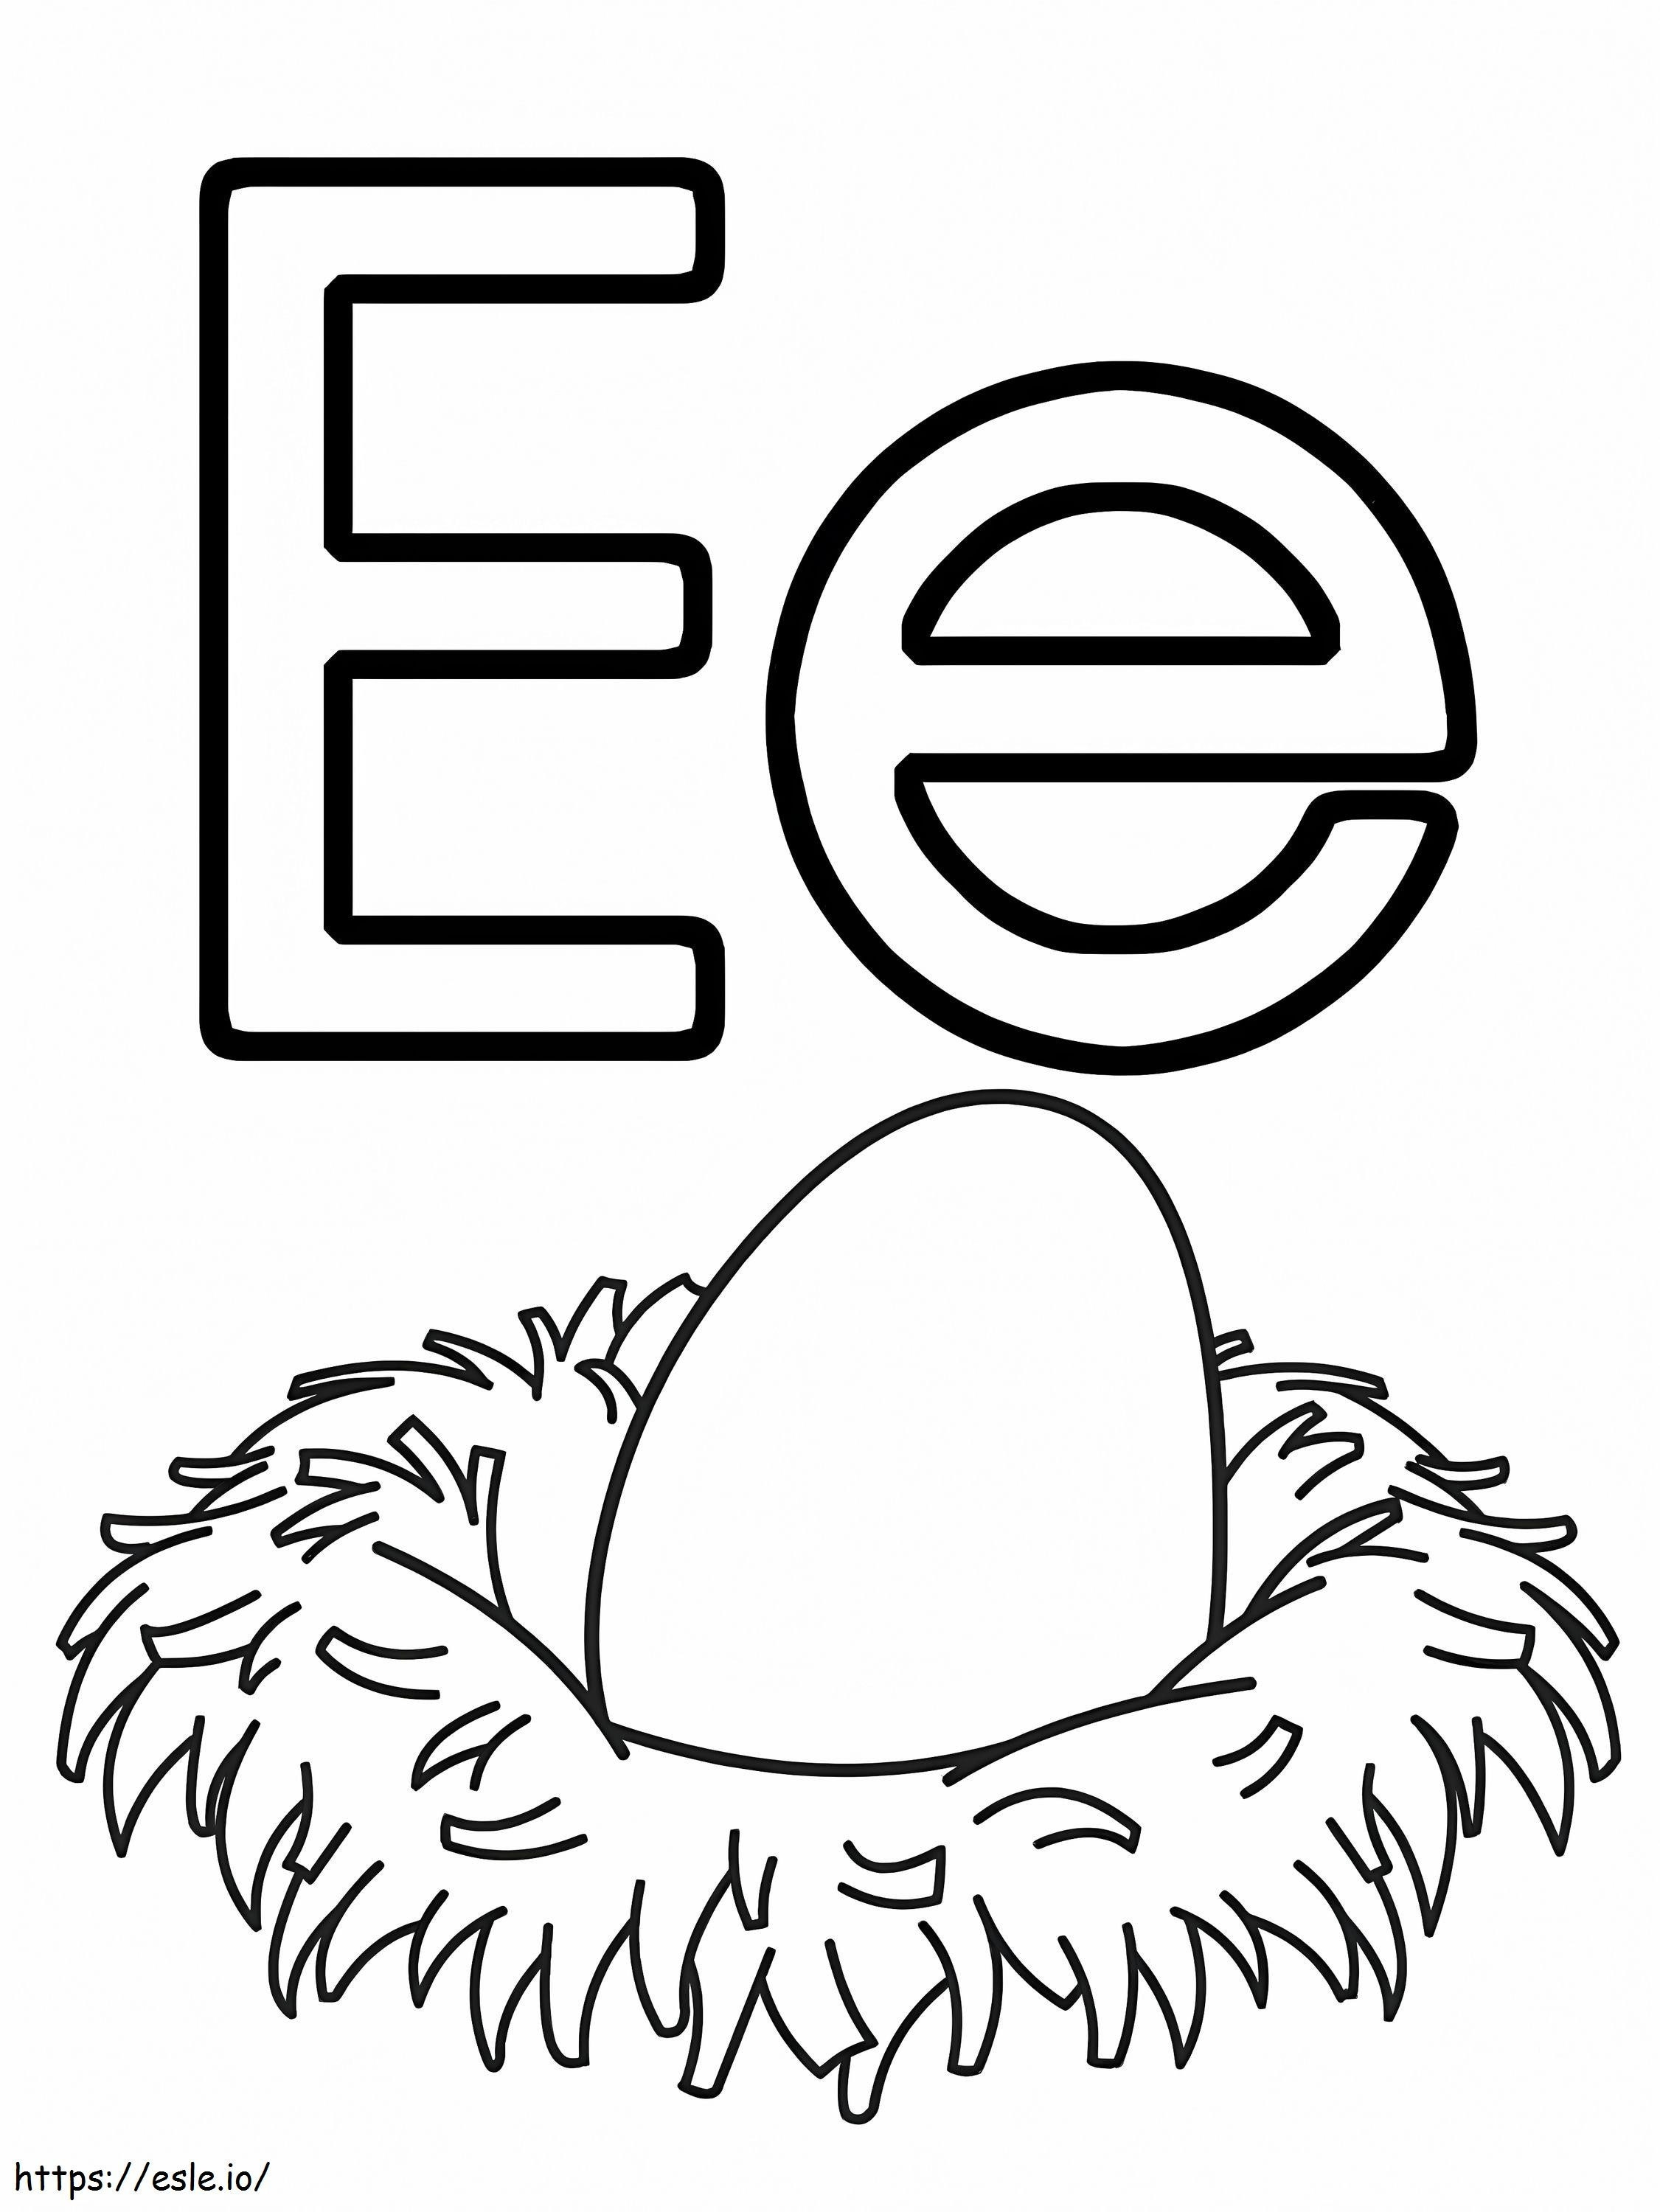 Eierbuchstabe E ausmalbilder